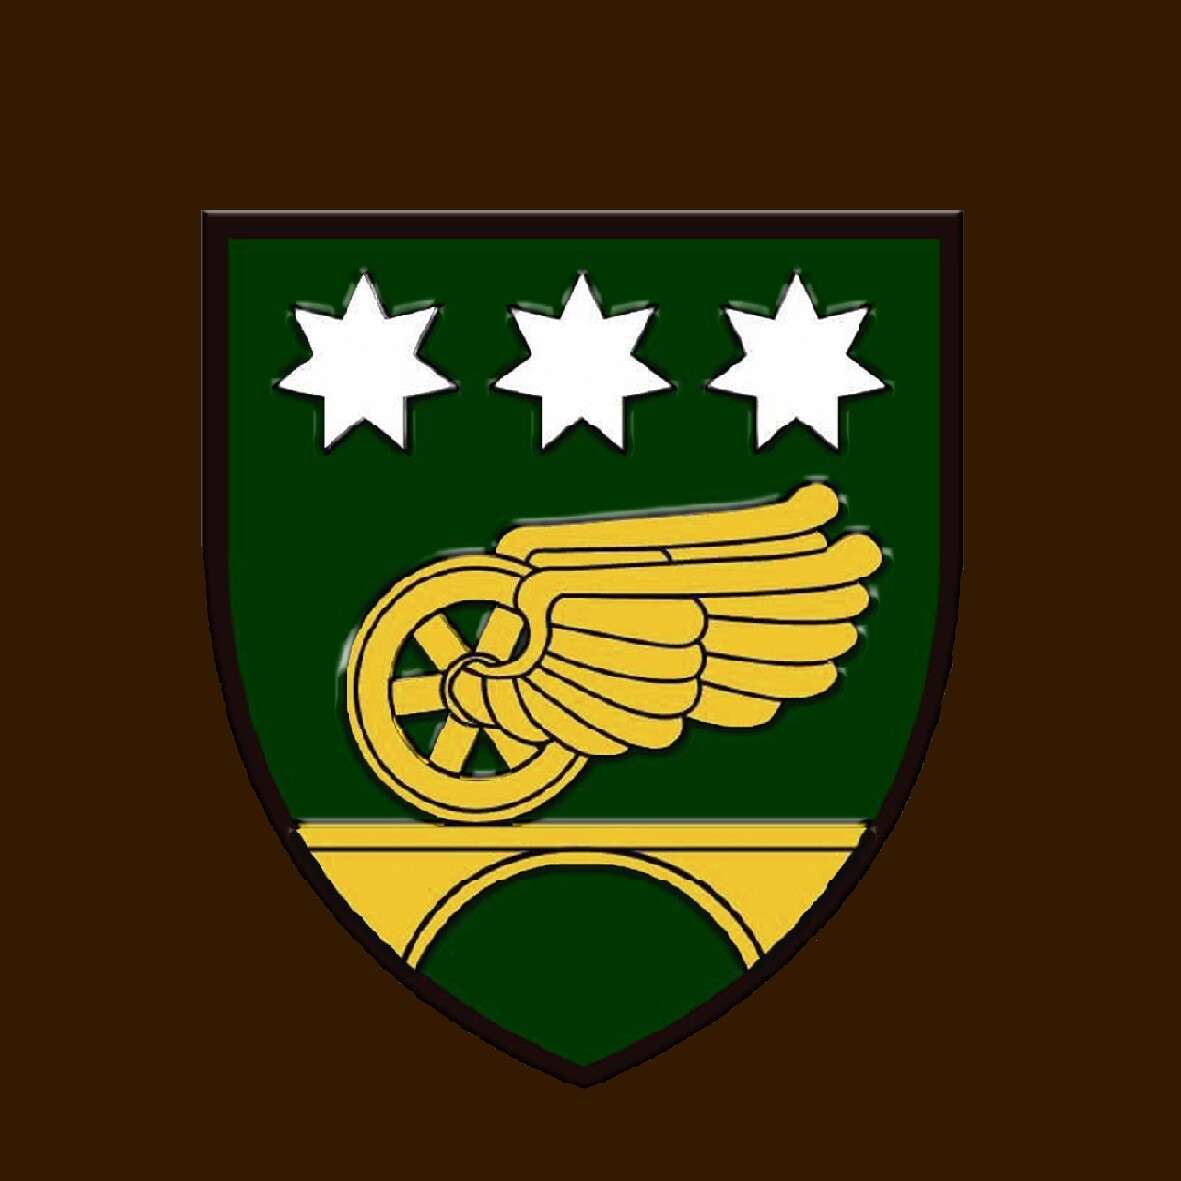 26 окрема Дніпровська бригада